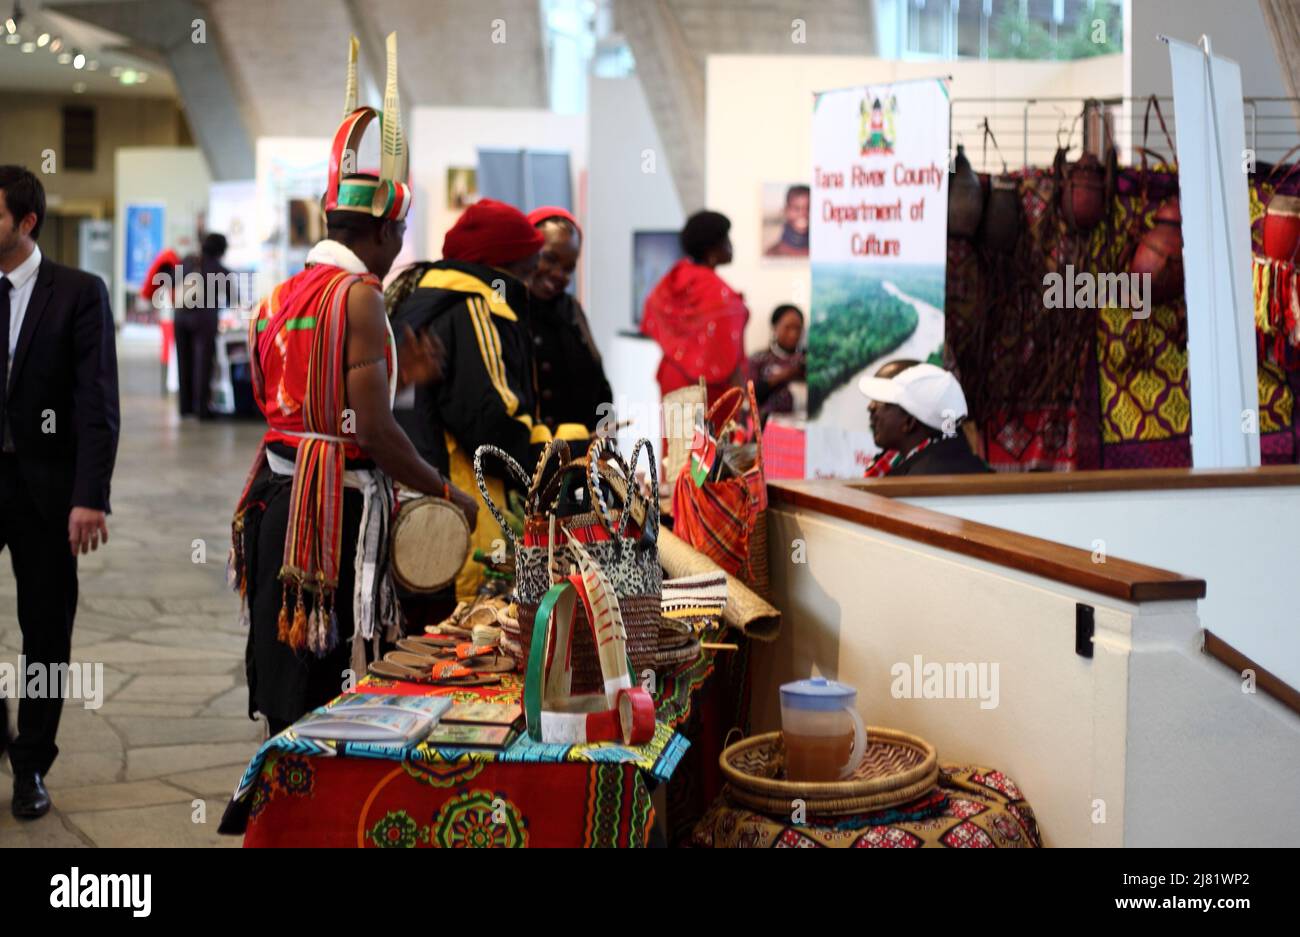 Evènement culturel à l'Unesco : stand d'artisanat traditionnel afrricain Foto Stock